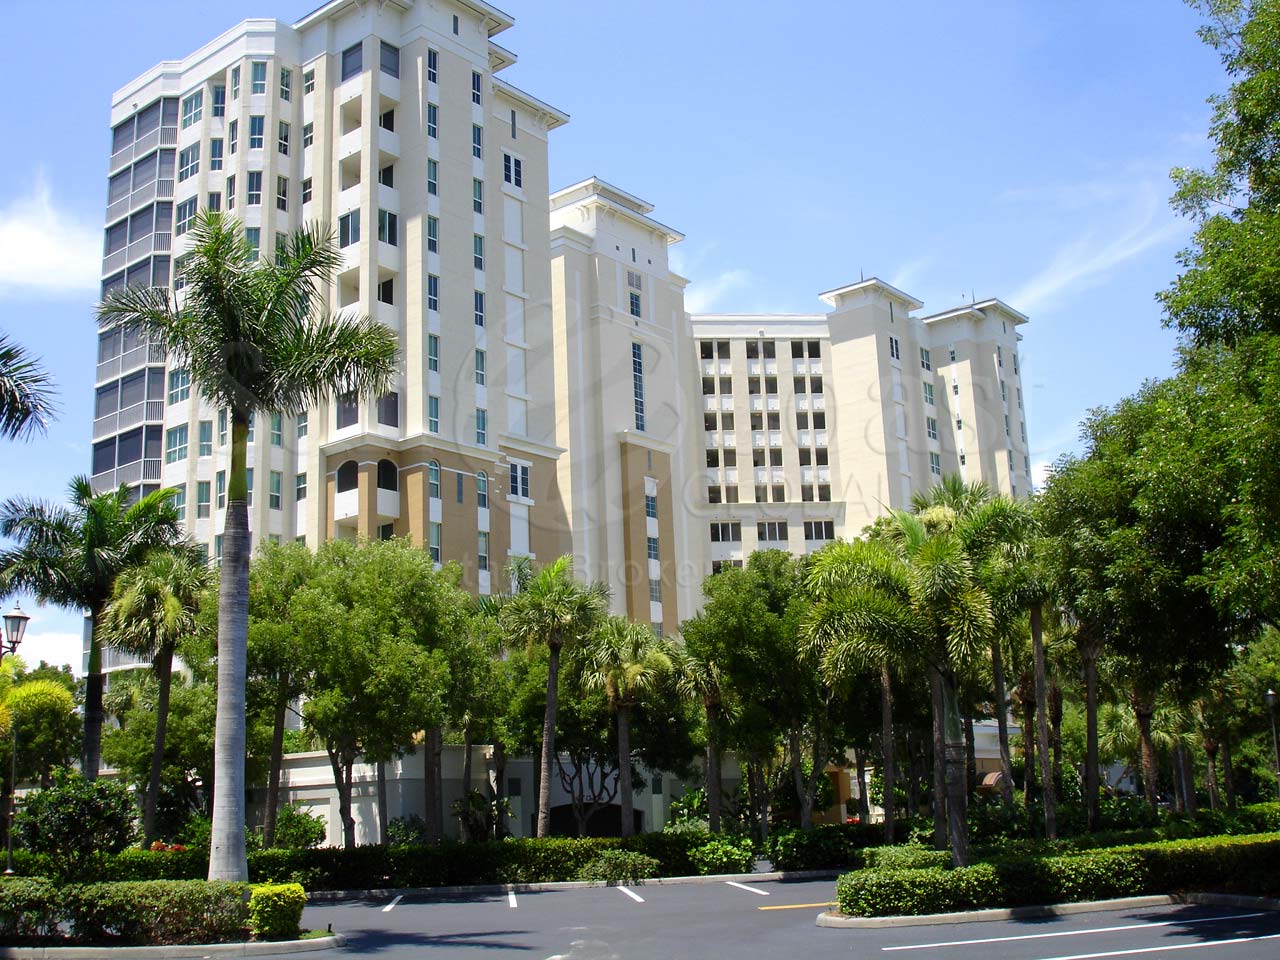 Cayman Condominium Building